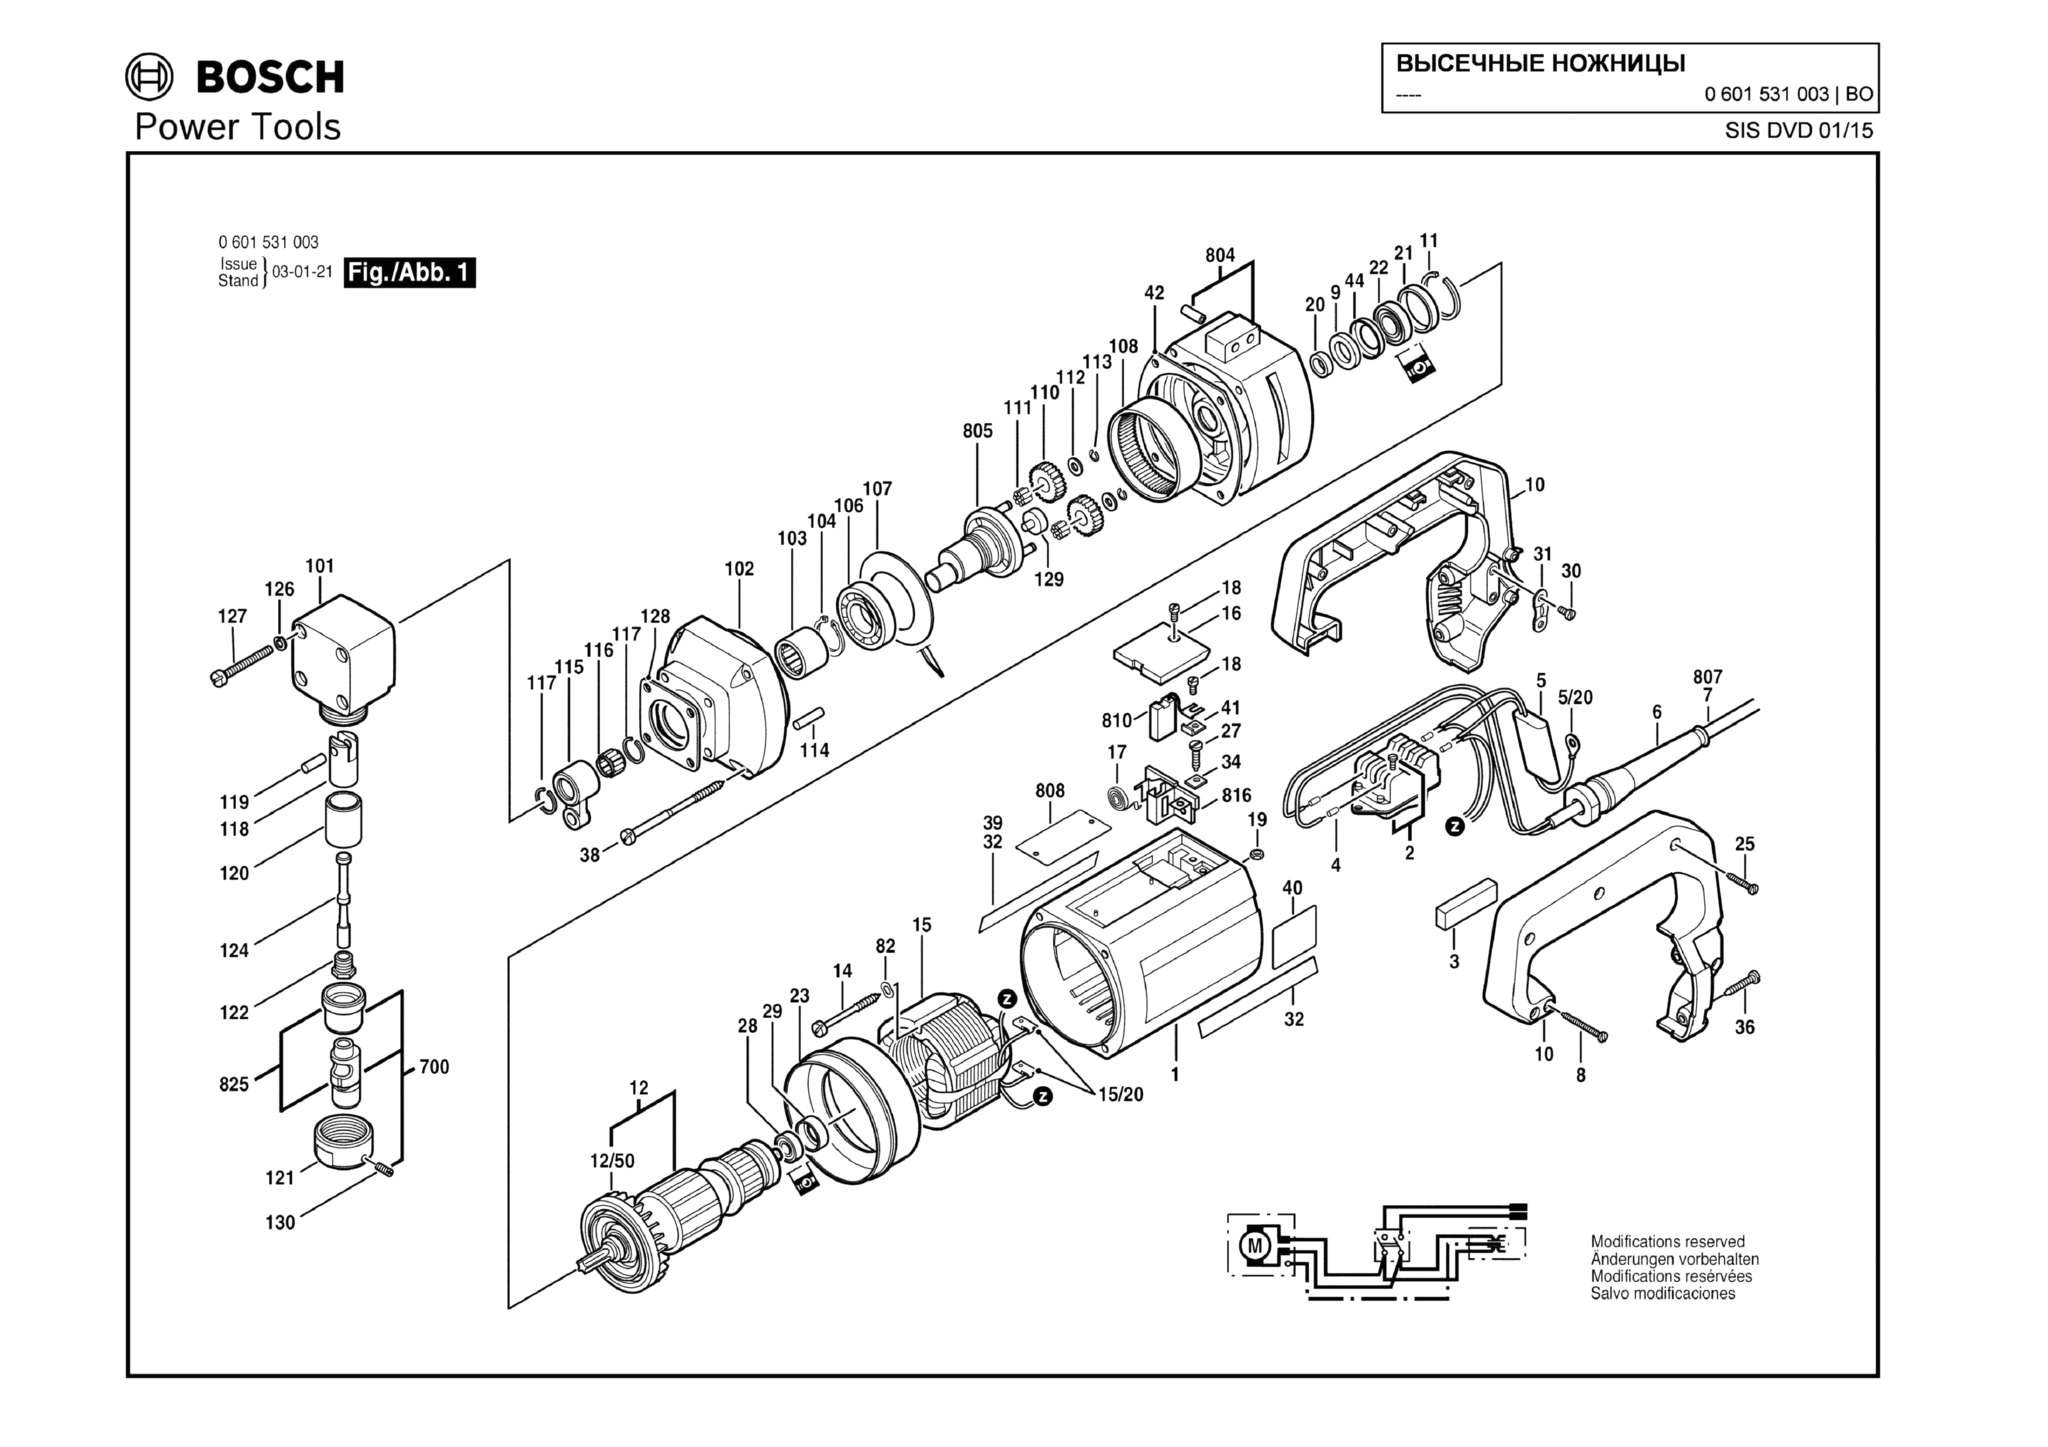 Запчасти, схема и деталировка Bosch (ТИП 0601531003)